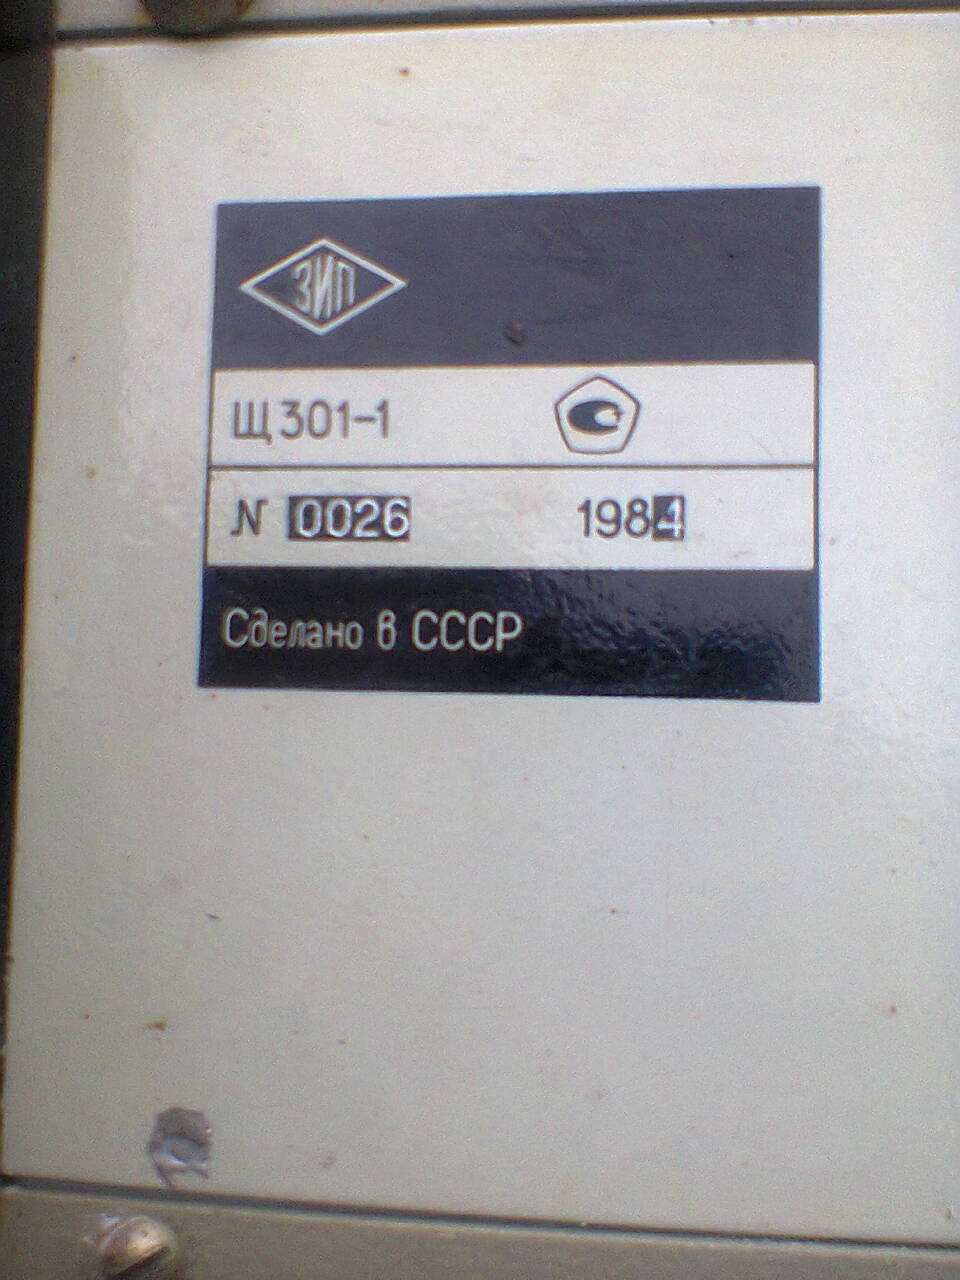 Прибор комбинированный вольтметр Щ301-1 СССР